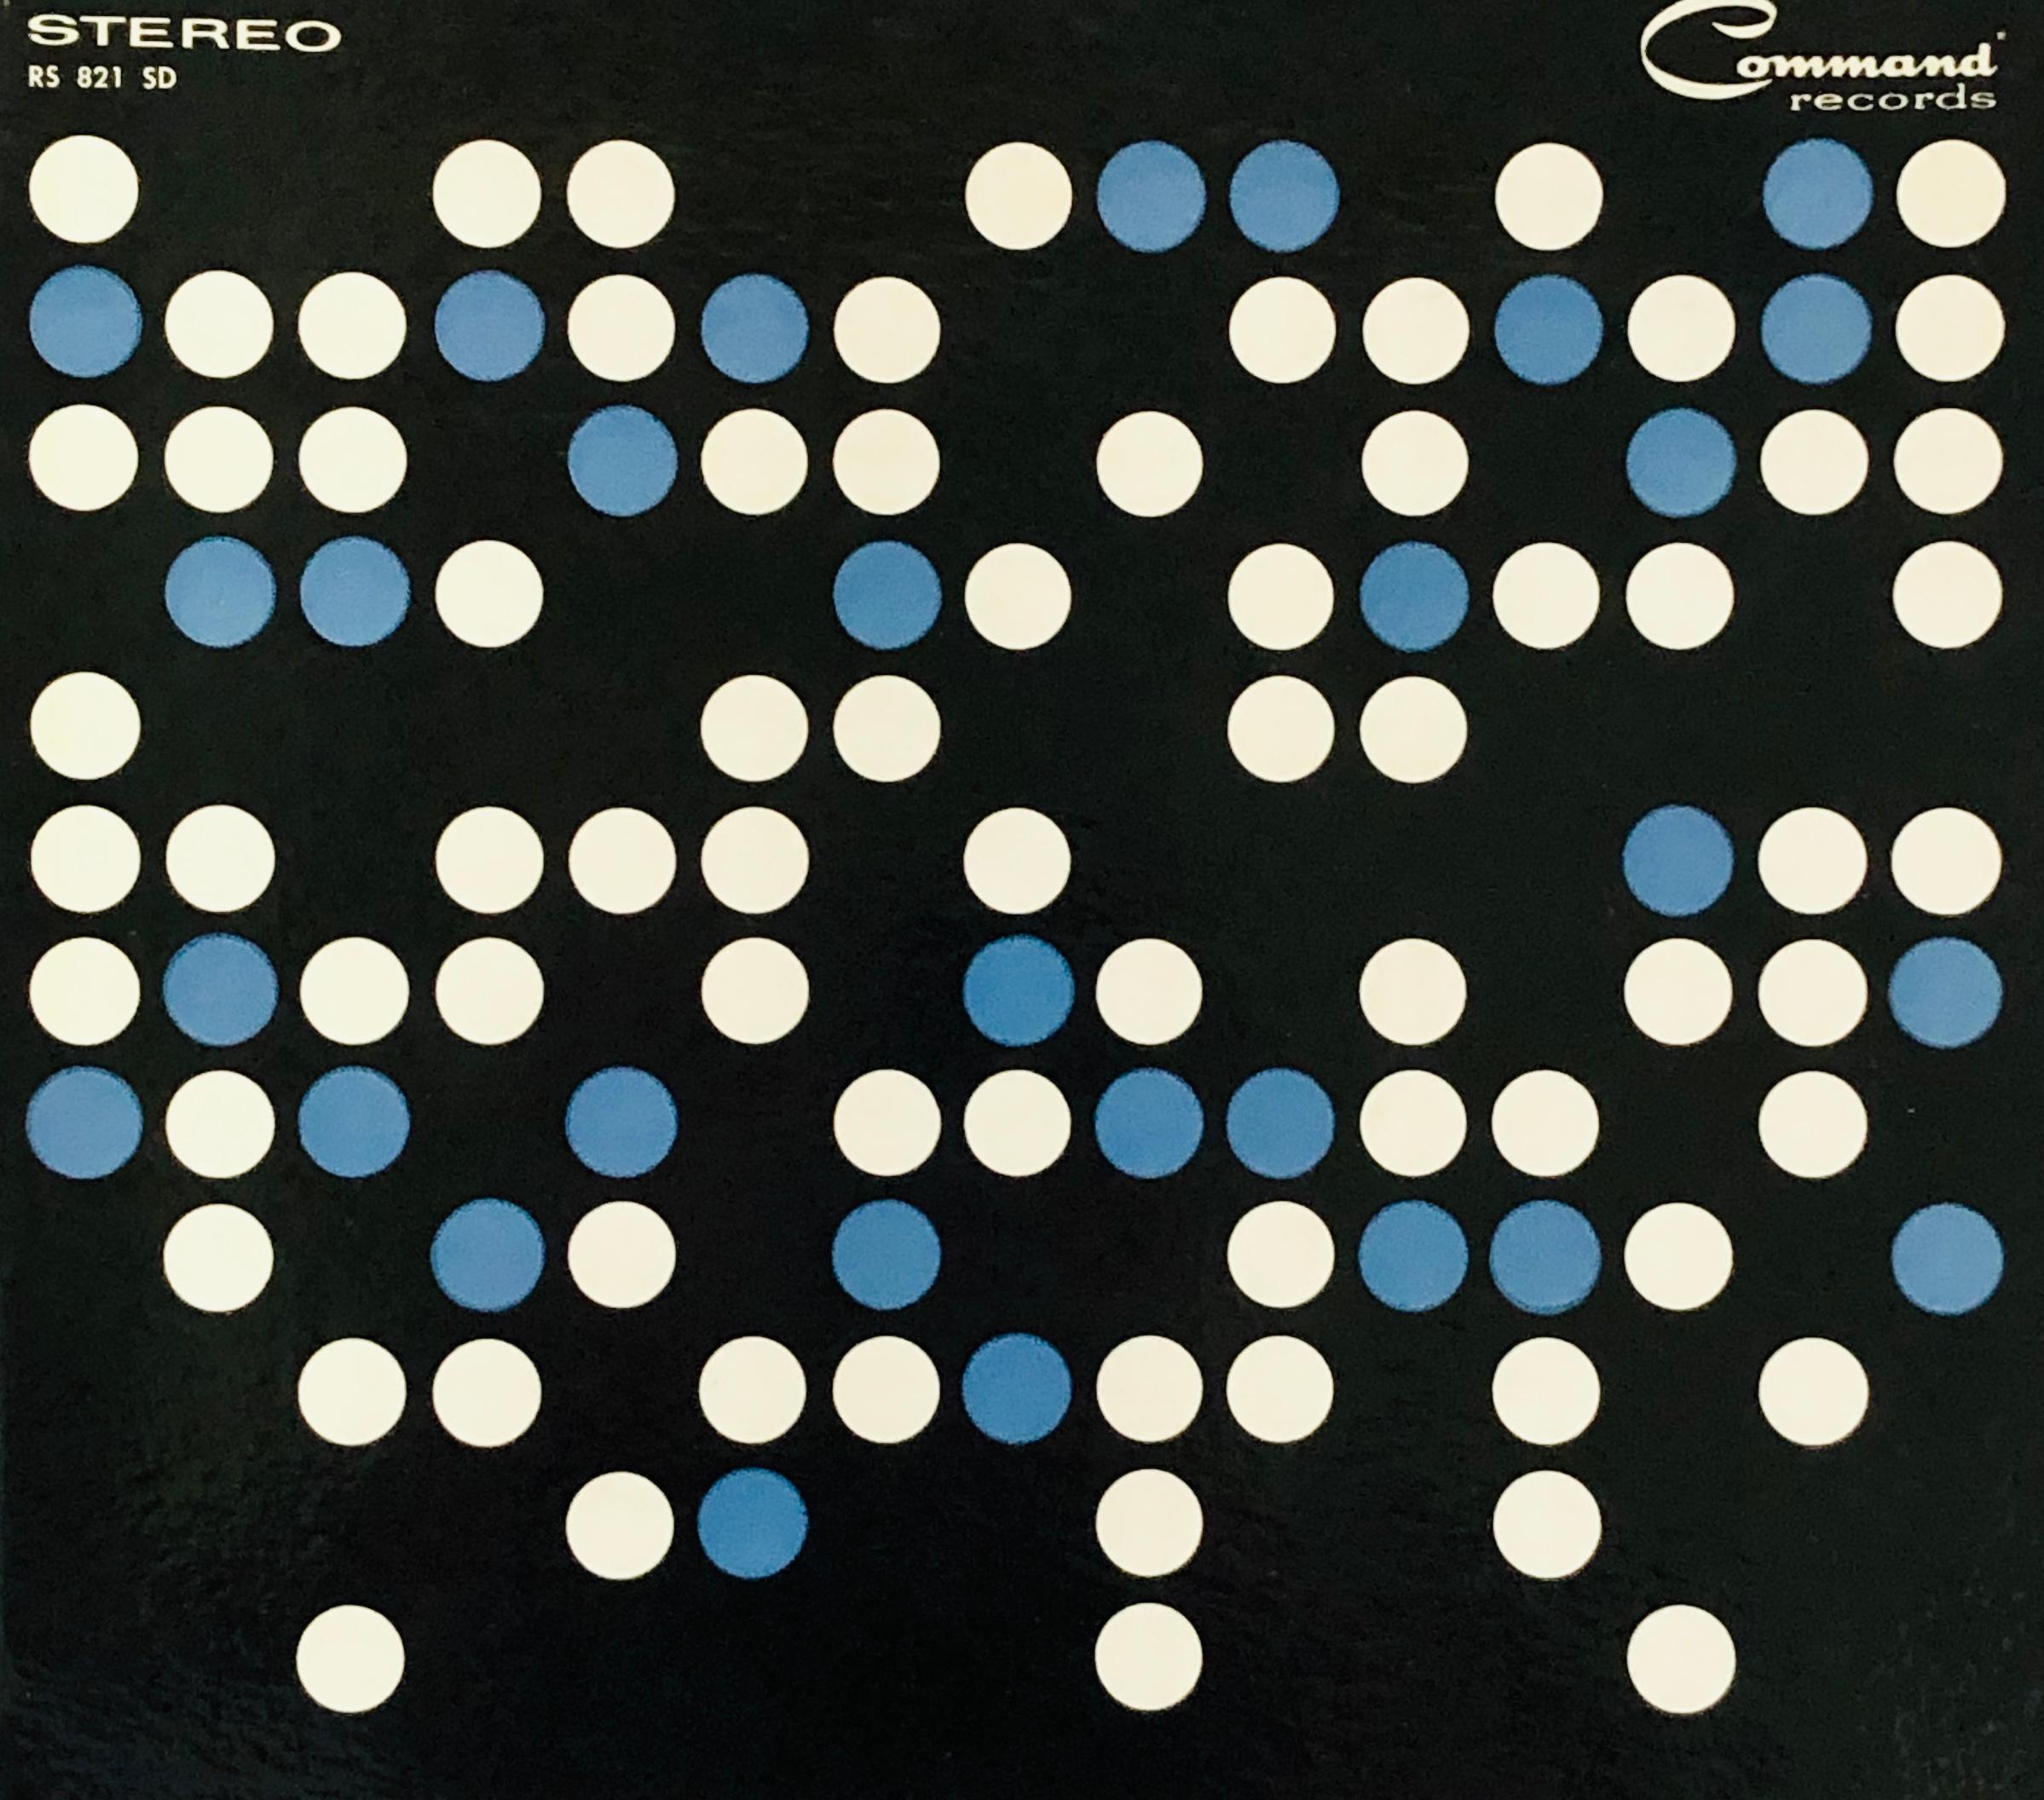 Album d'art de Josef Albers vers la fin des années 1950
Une pochette de disque vinyle (contenant son disque) brillamment conçue par Josef Albers c.C.1958. Ça a l'air fantastique encadré.

Lithographie offset sur pochette d'album en vinyle.
12x12